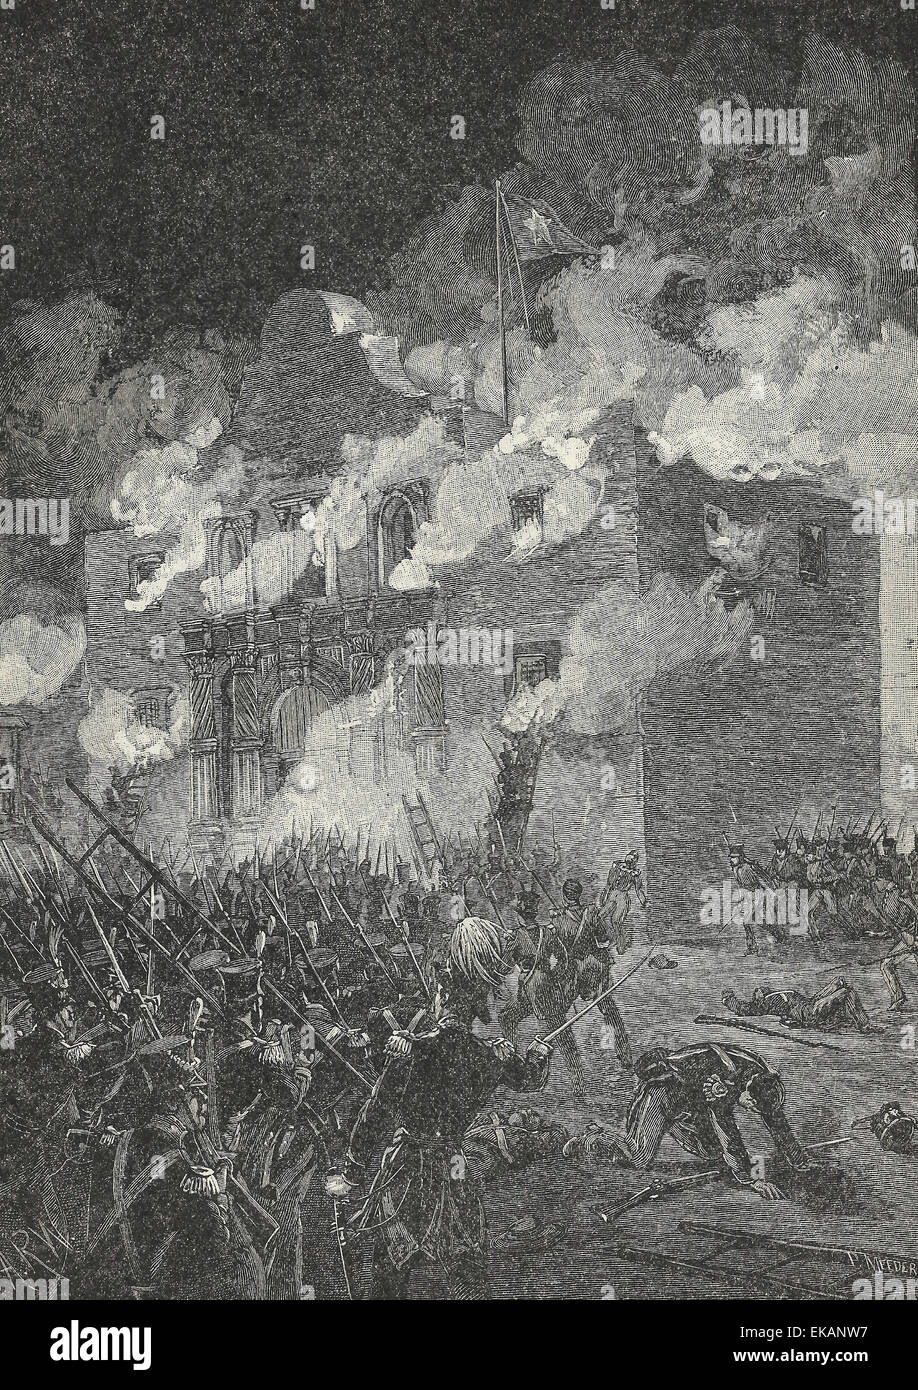 Der Fall von Alamo, März 1836 Stockfoto